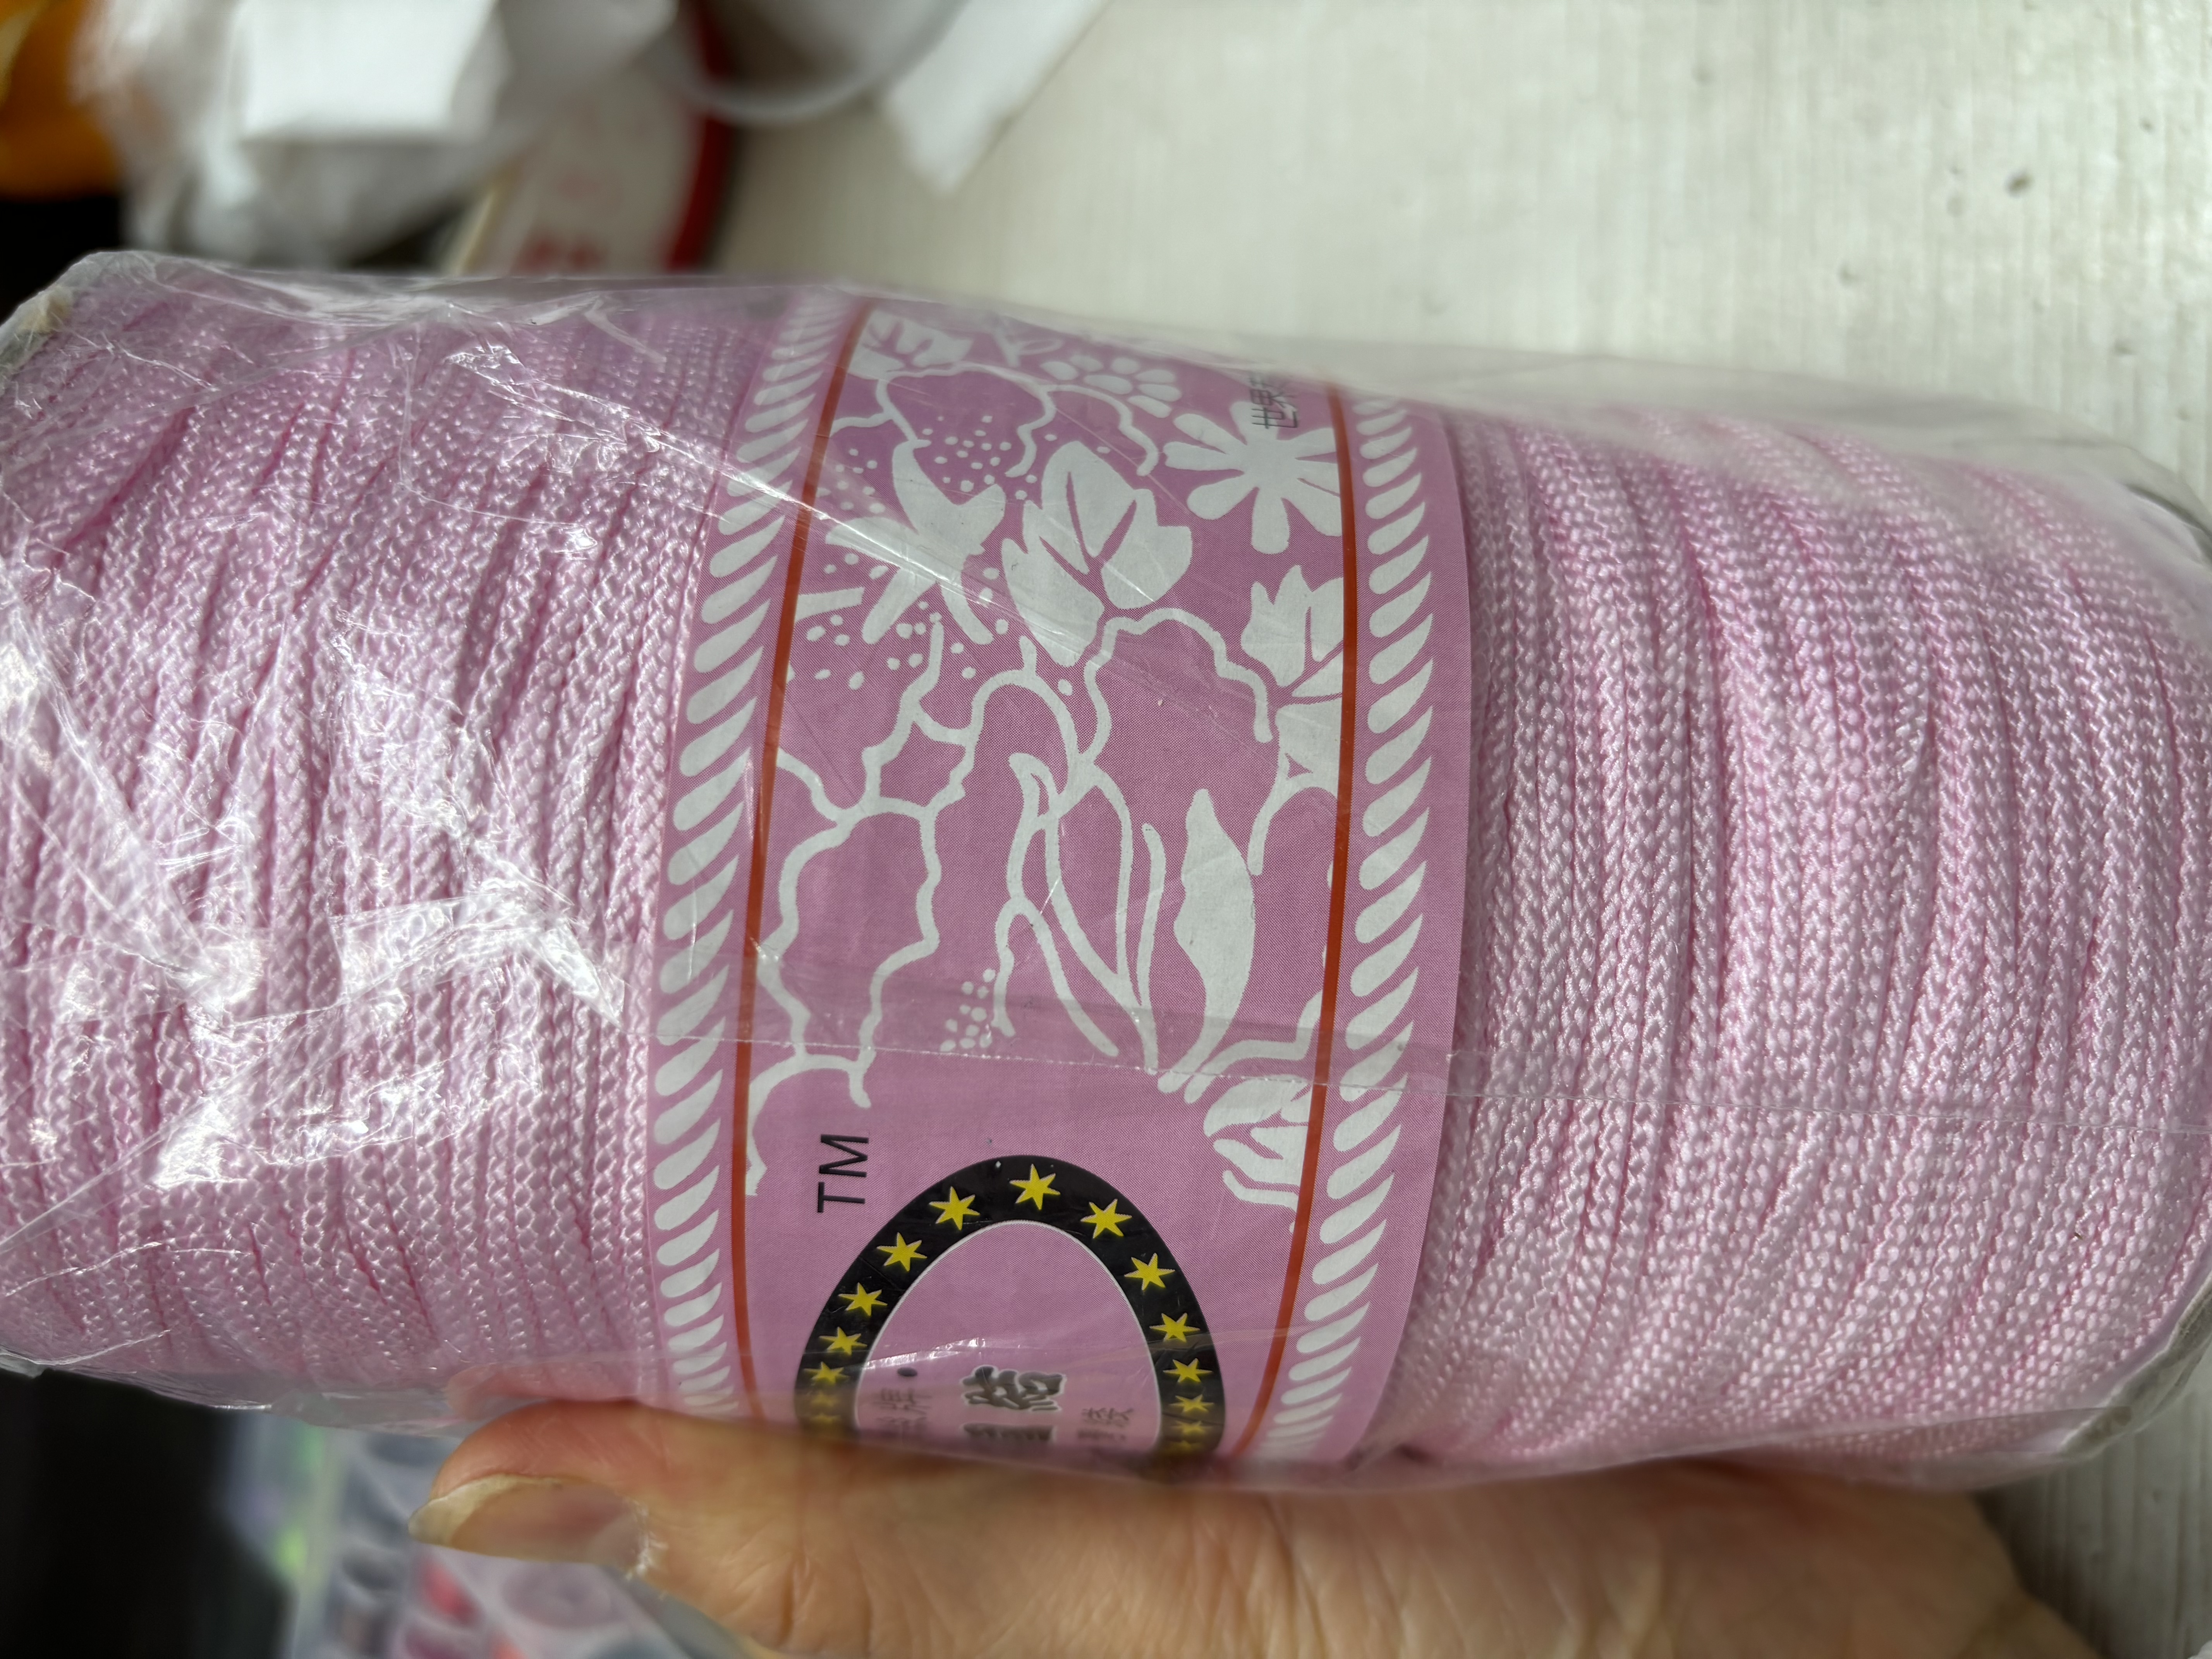 台湾线2 m m曼波绳锦纶大卷半公斤，粉红色。一卷约330米左右，搭配饰品专用线高档手链项链